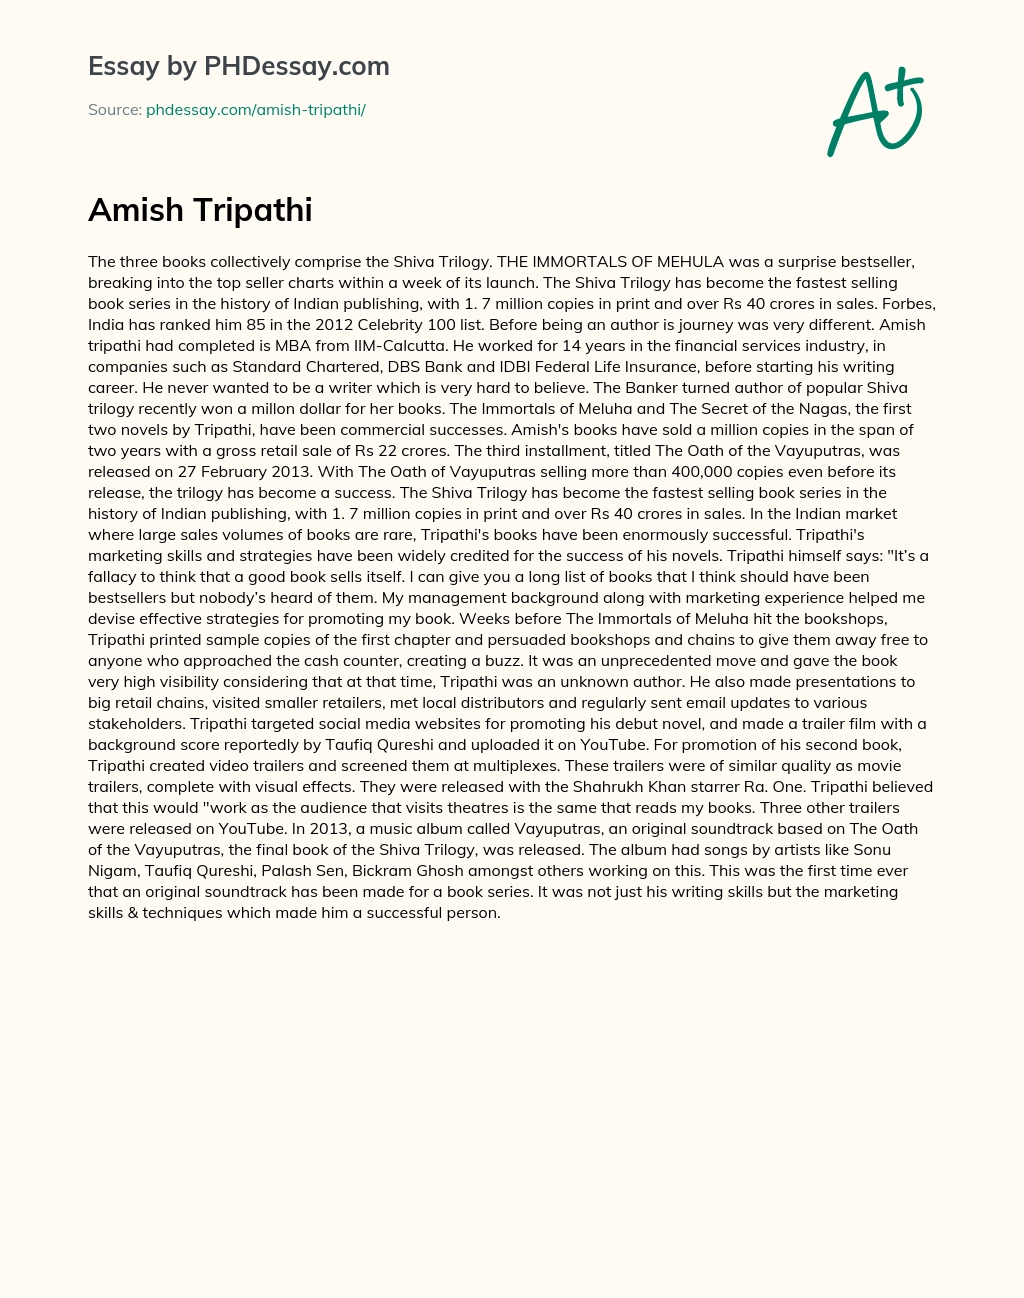 Amish Tripathi essay